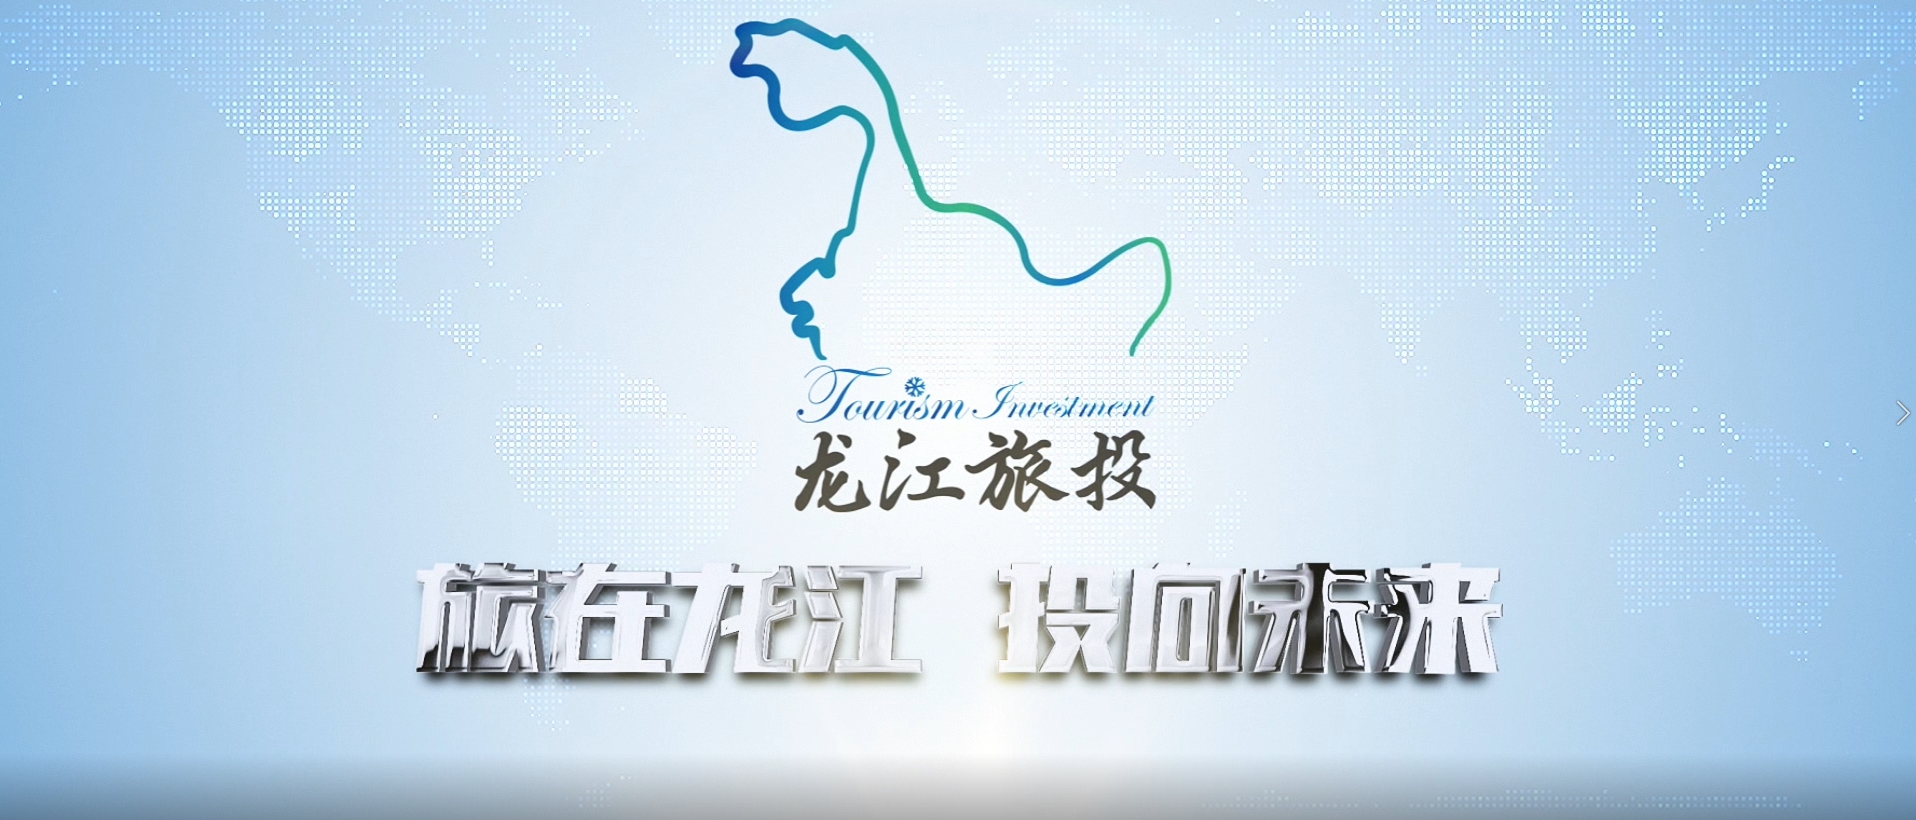 黑龍江省旅游投資集團有限公司宣傳片2021